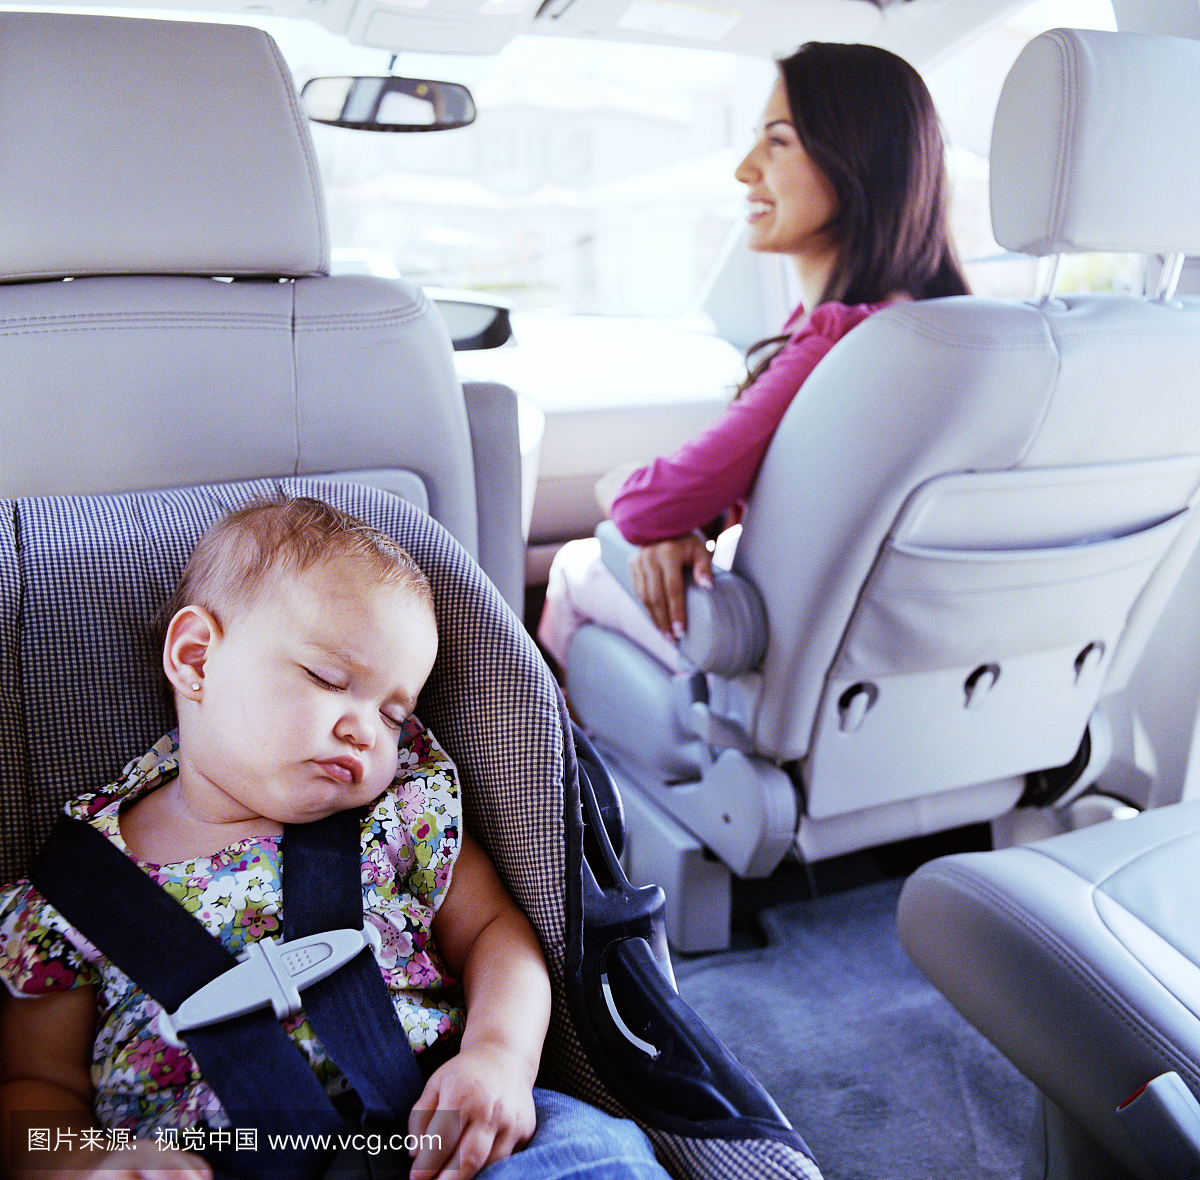 婴儿(12-15个月)睡在汽车座椅,女人在背景中